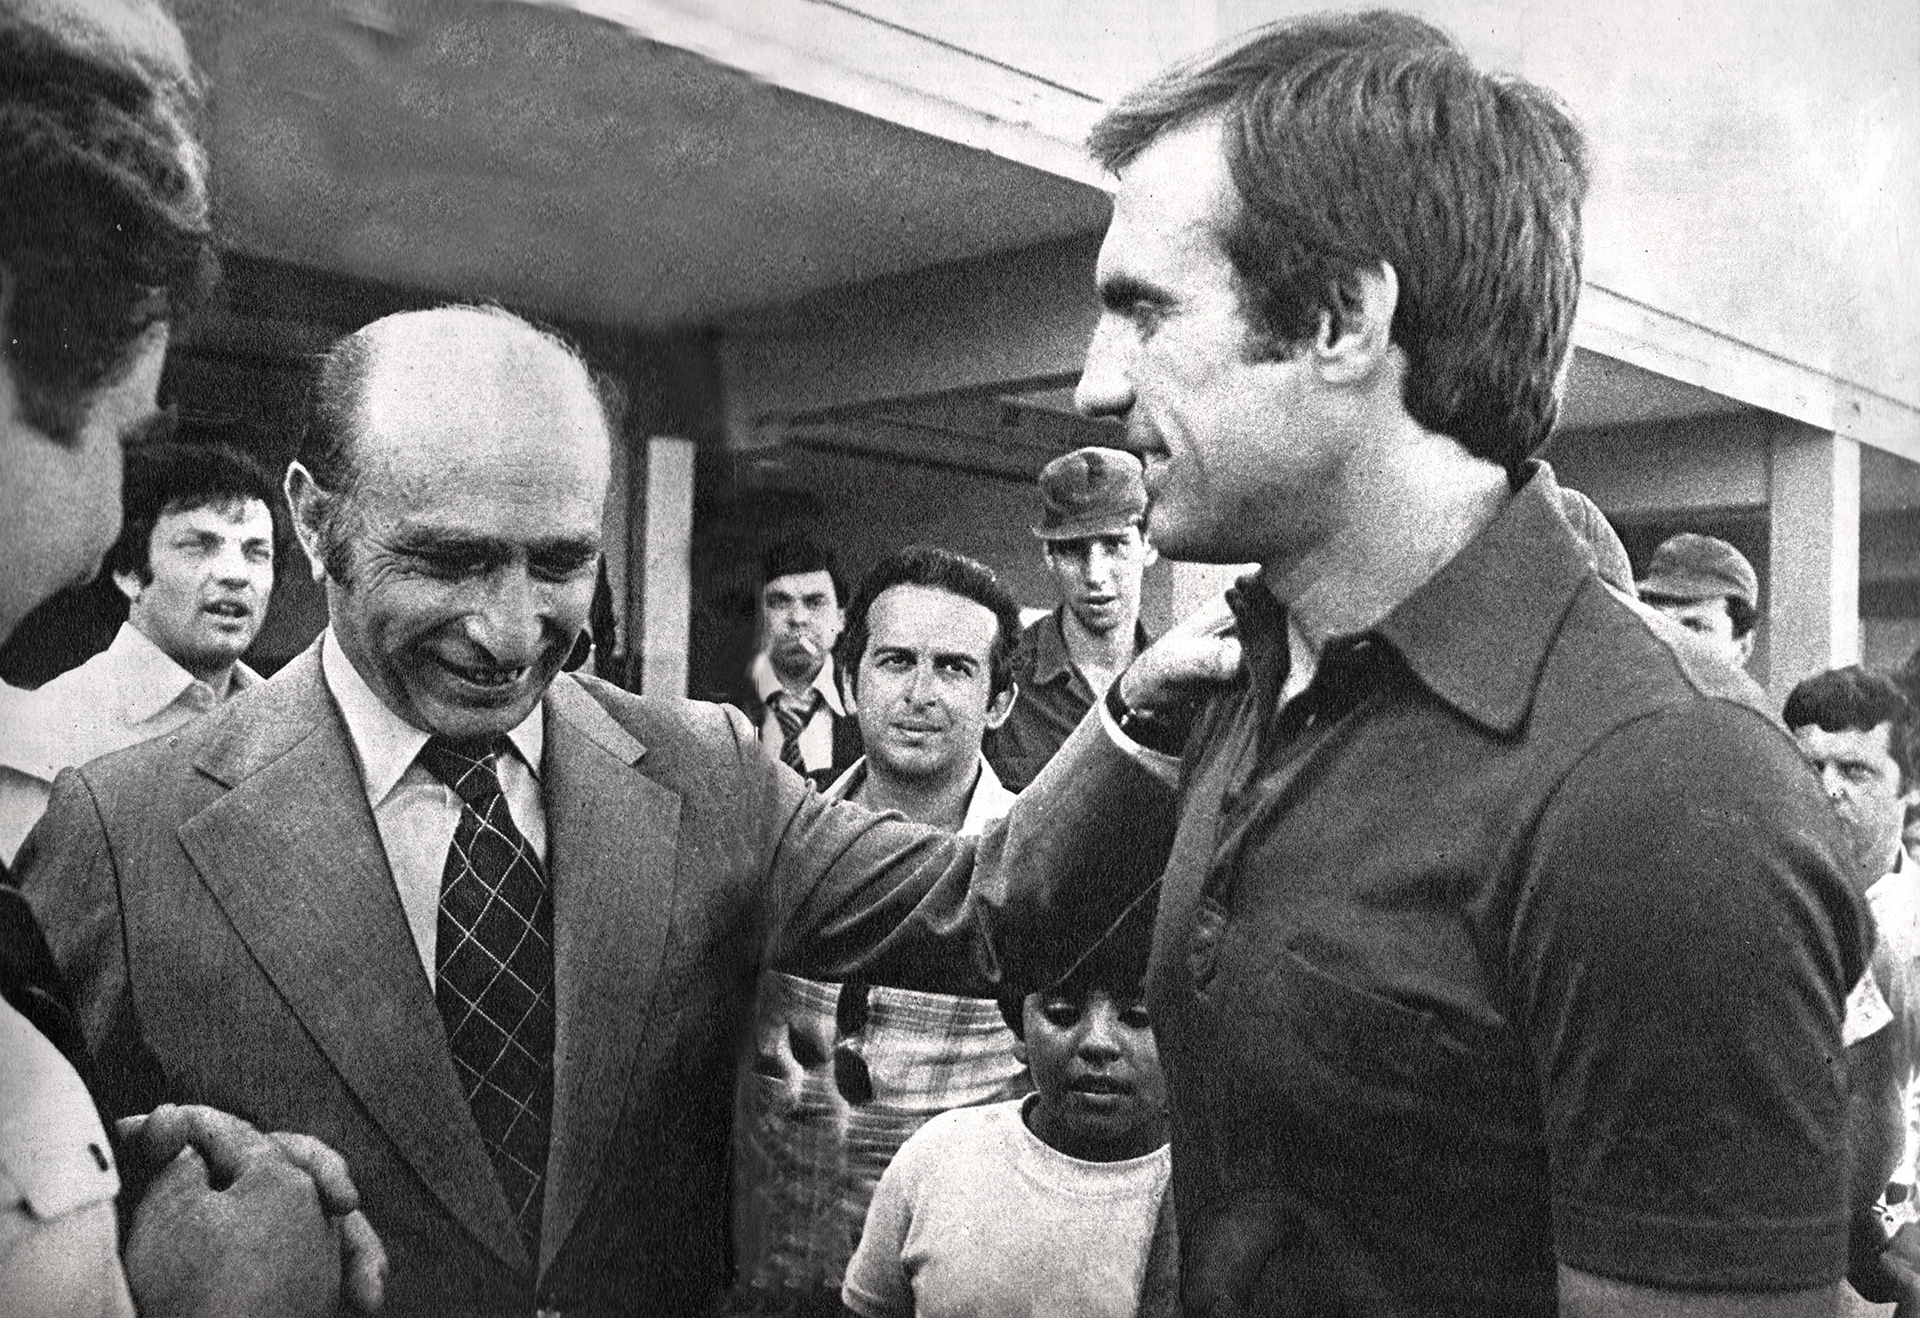 Fangio y Reutemann en la previa del GP de Argentina F1 en 1977. Ambos llegaron llegaron con el apoyo del Estado (Archivo CORSA).